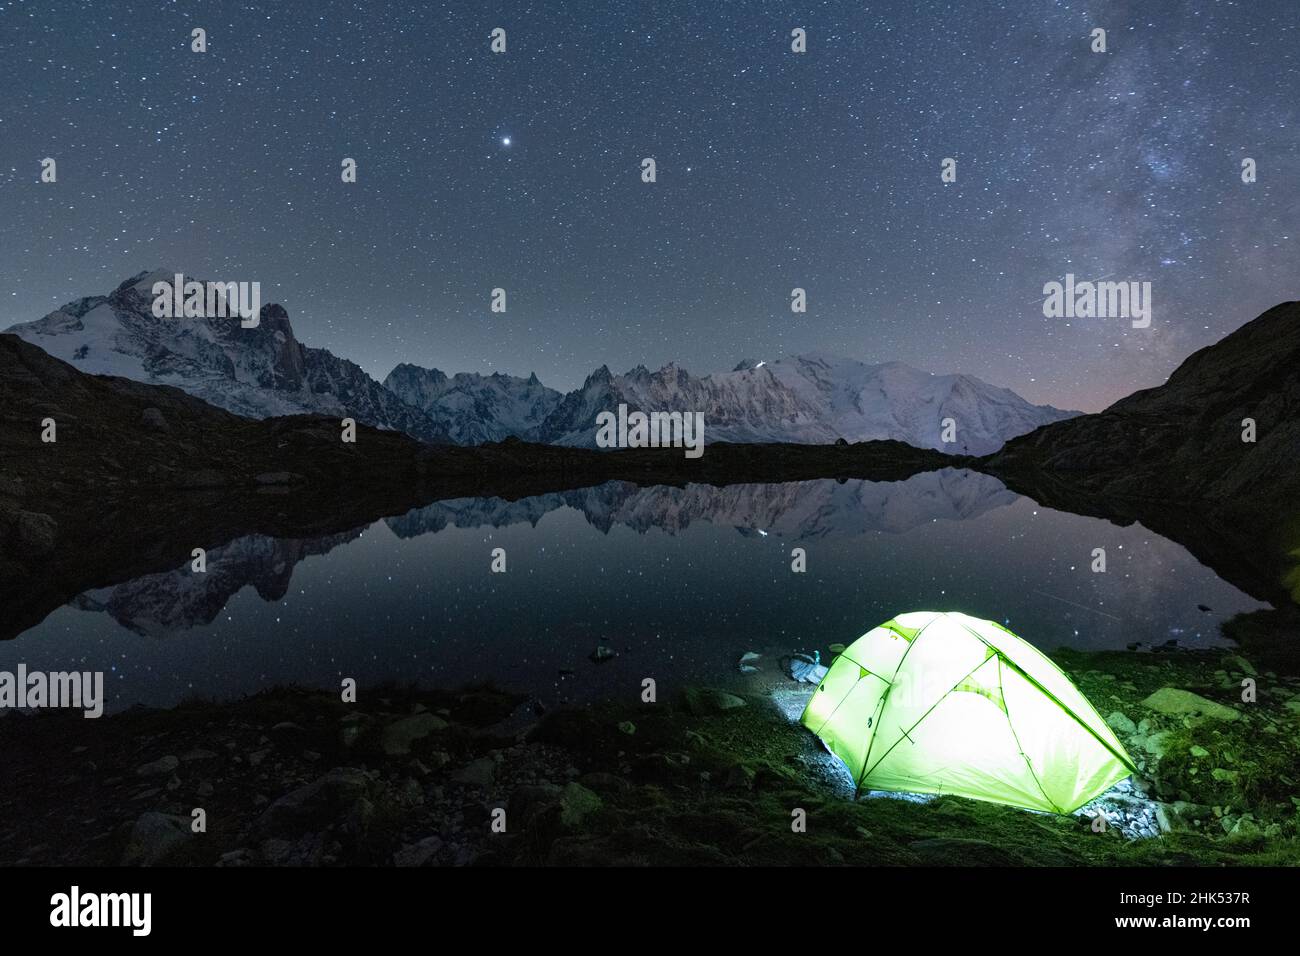 Leuchtendes Zelt unter den Sternen bei Lacs des Cheserys mit Mont Blanc-Massiv im Wasser, Chamonix, Haute Savoie, Französische Alpen, Frankreich, Europa Stockfoto